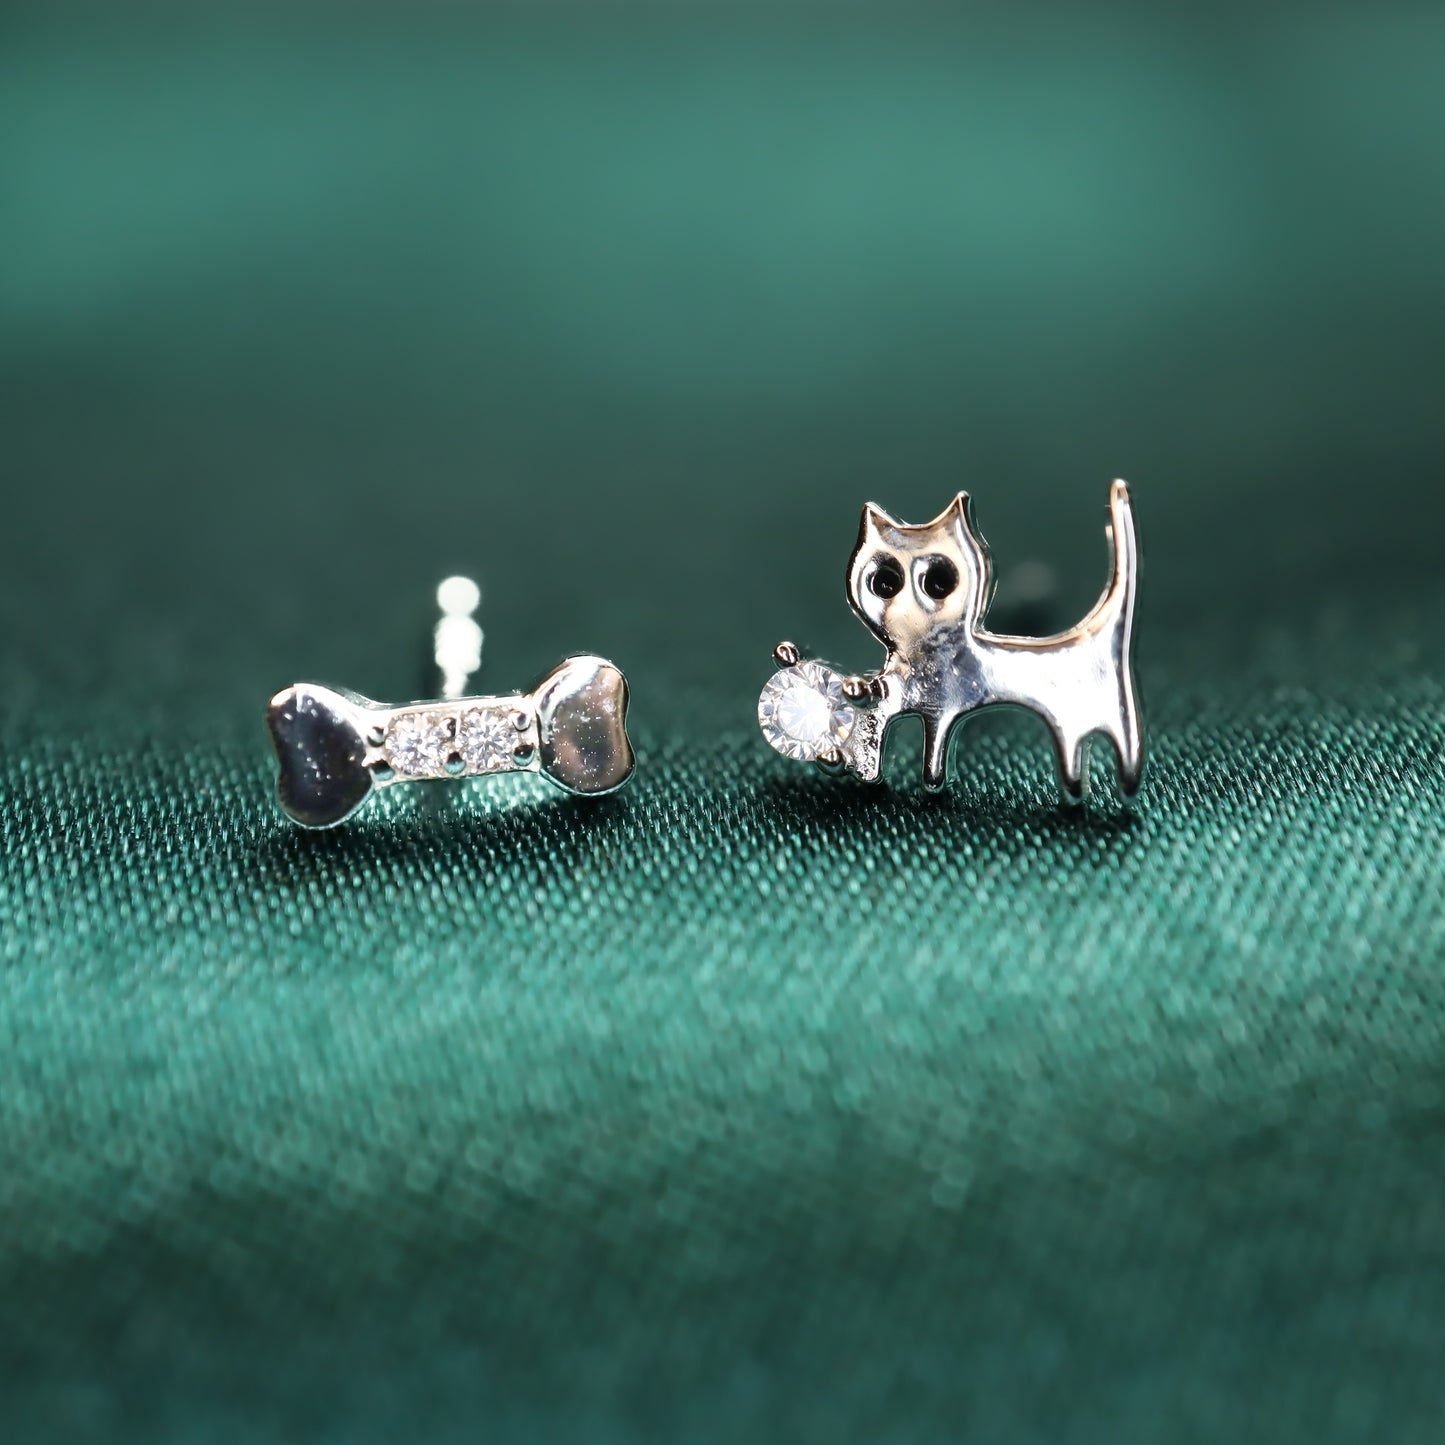 Cat Chase Bone - S999 Sterling Silver Zircon Stud Earrings (Color: Silver)